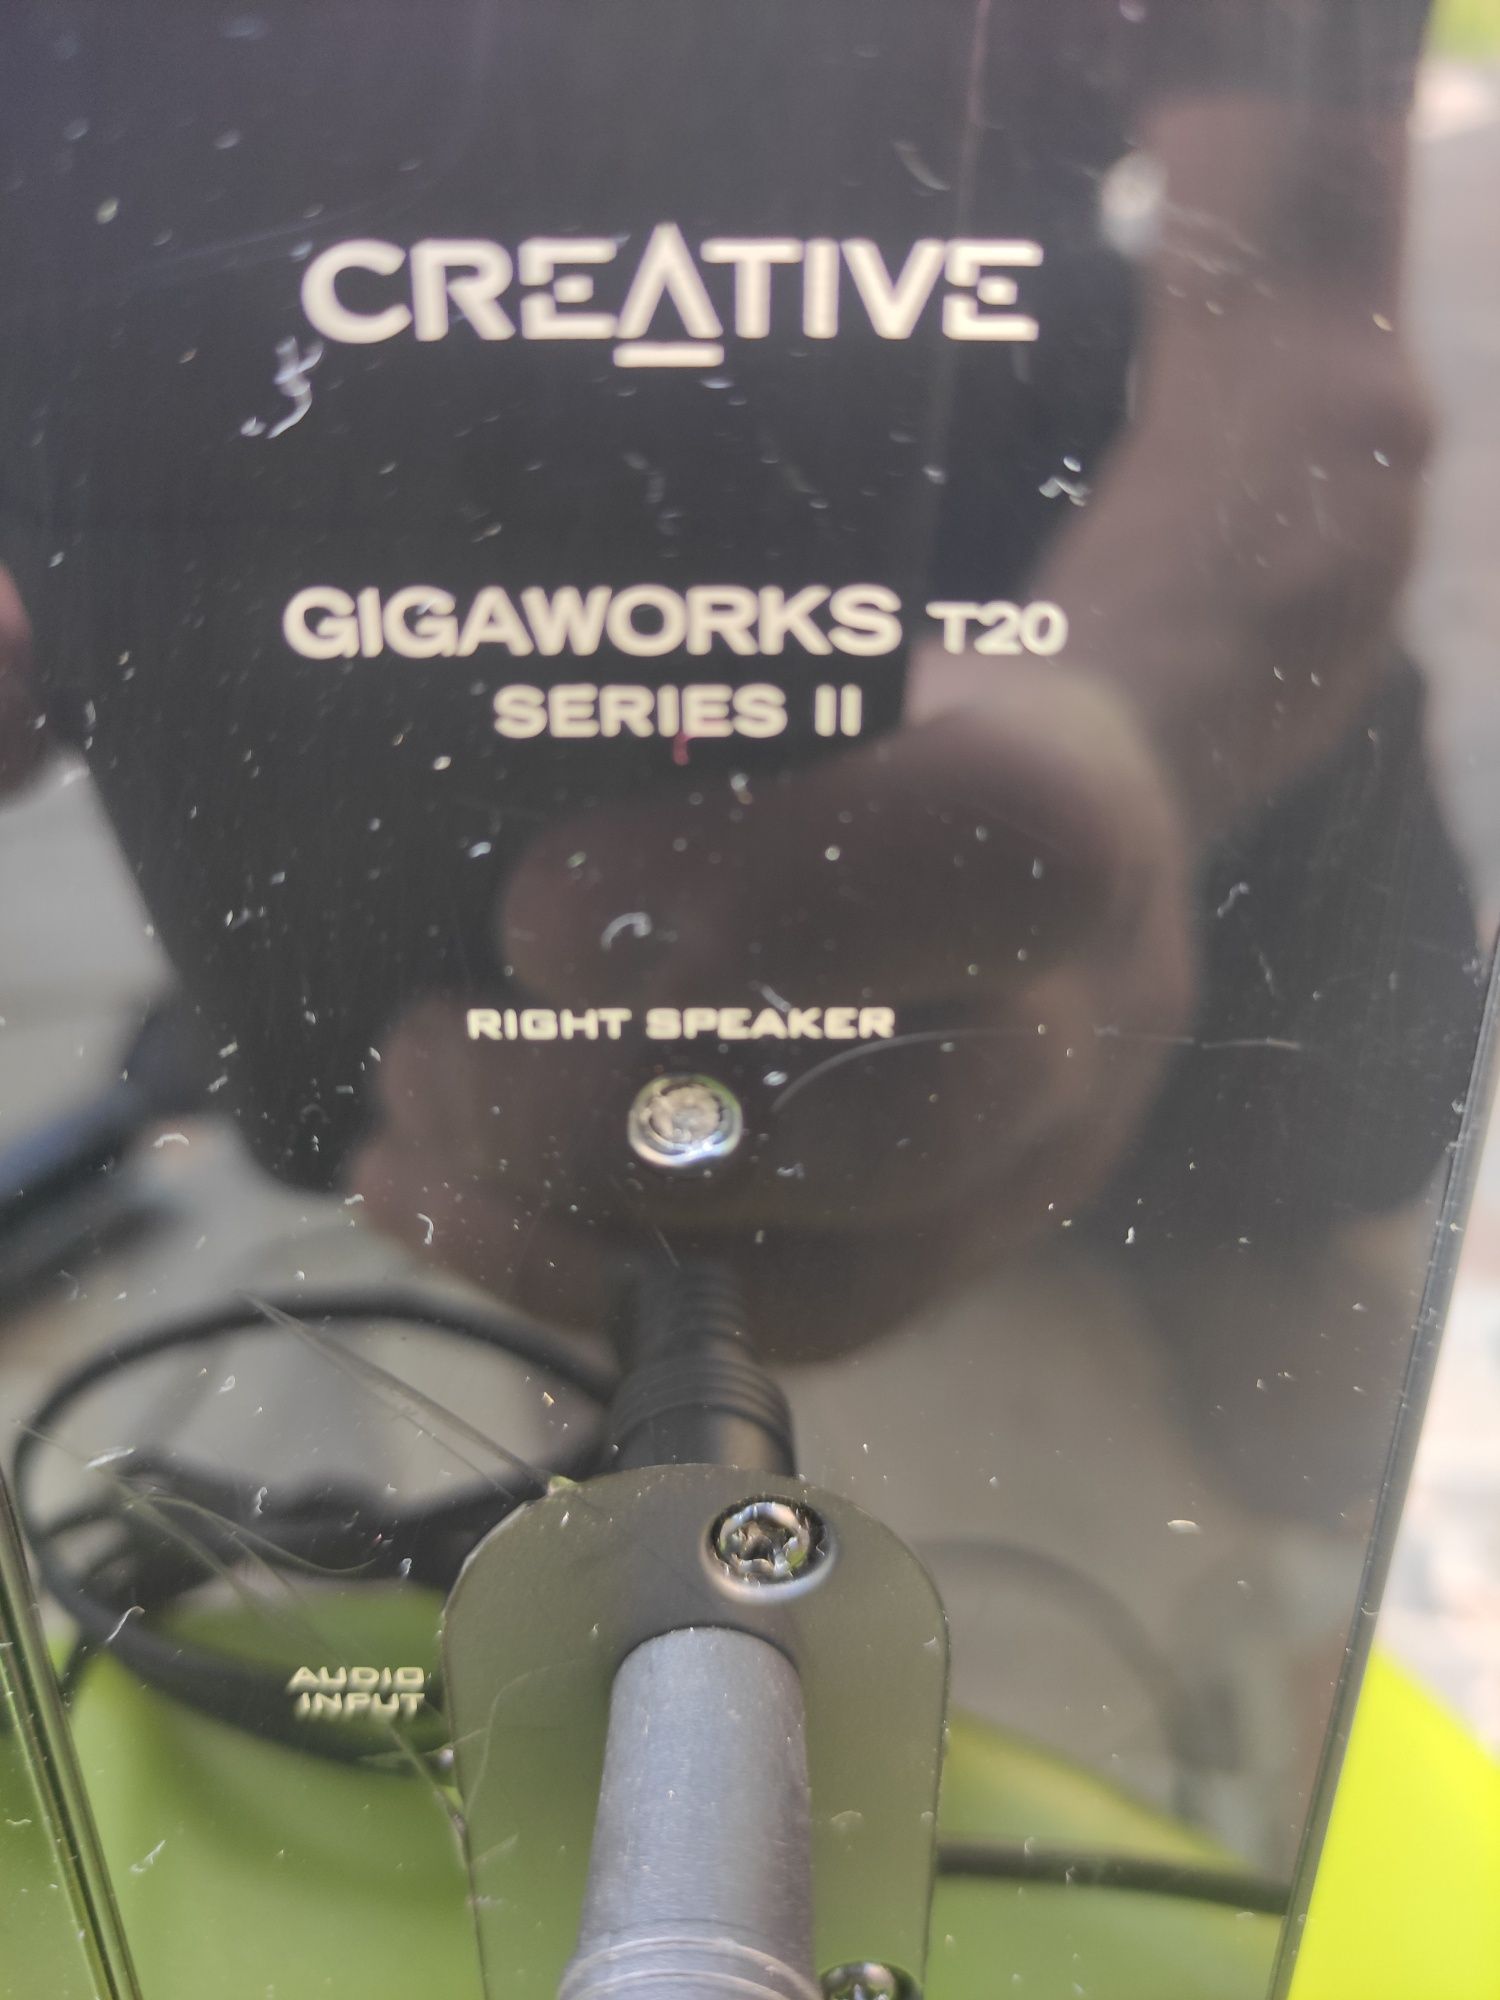 Boxe calculator CREATIVE  GIGAWORKS T20 seriess  II